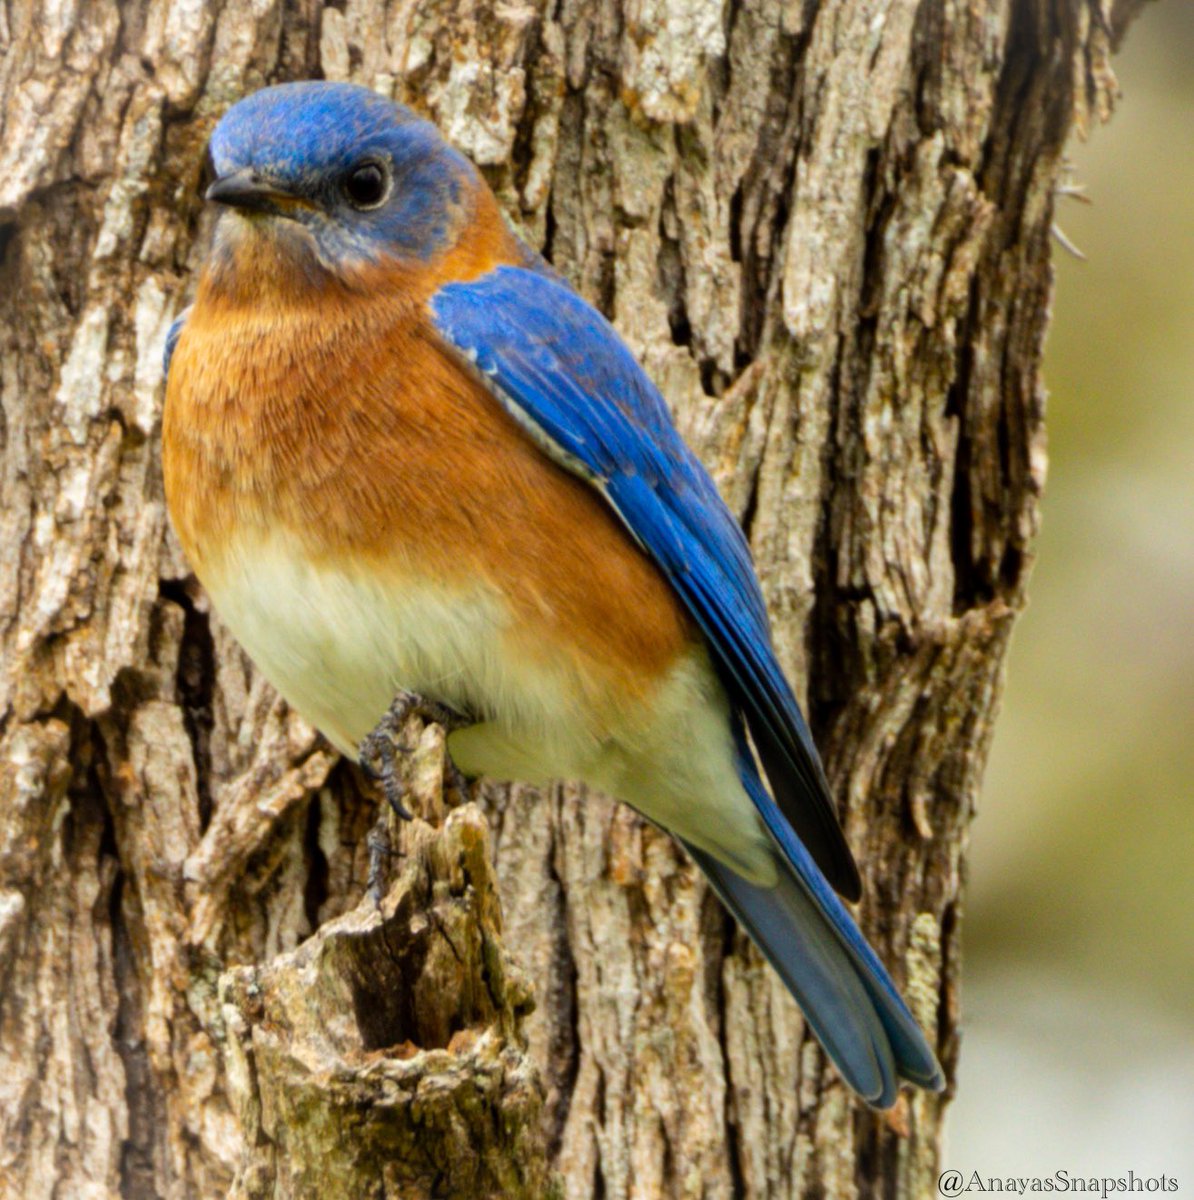 #birdsofinstagram #birdsonearth #bluebird #colorfulbirds #texasbirds #southtexas